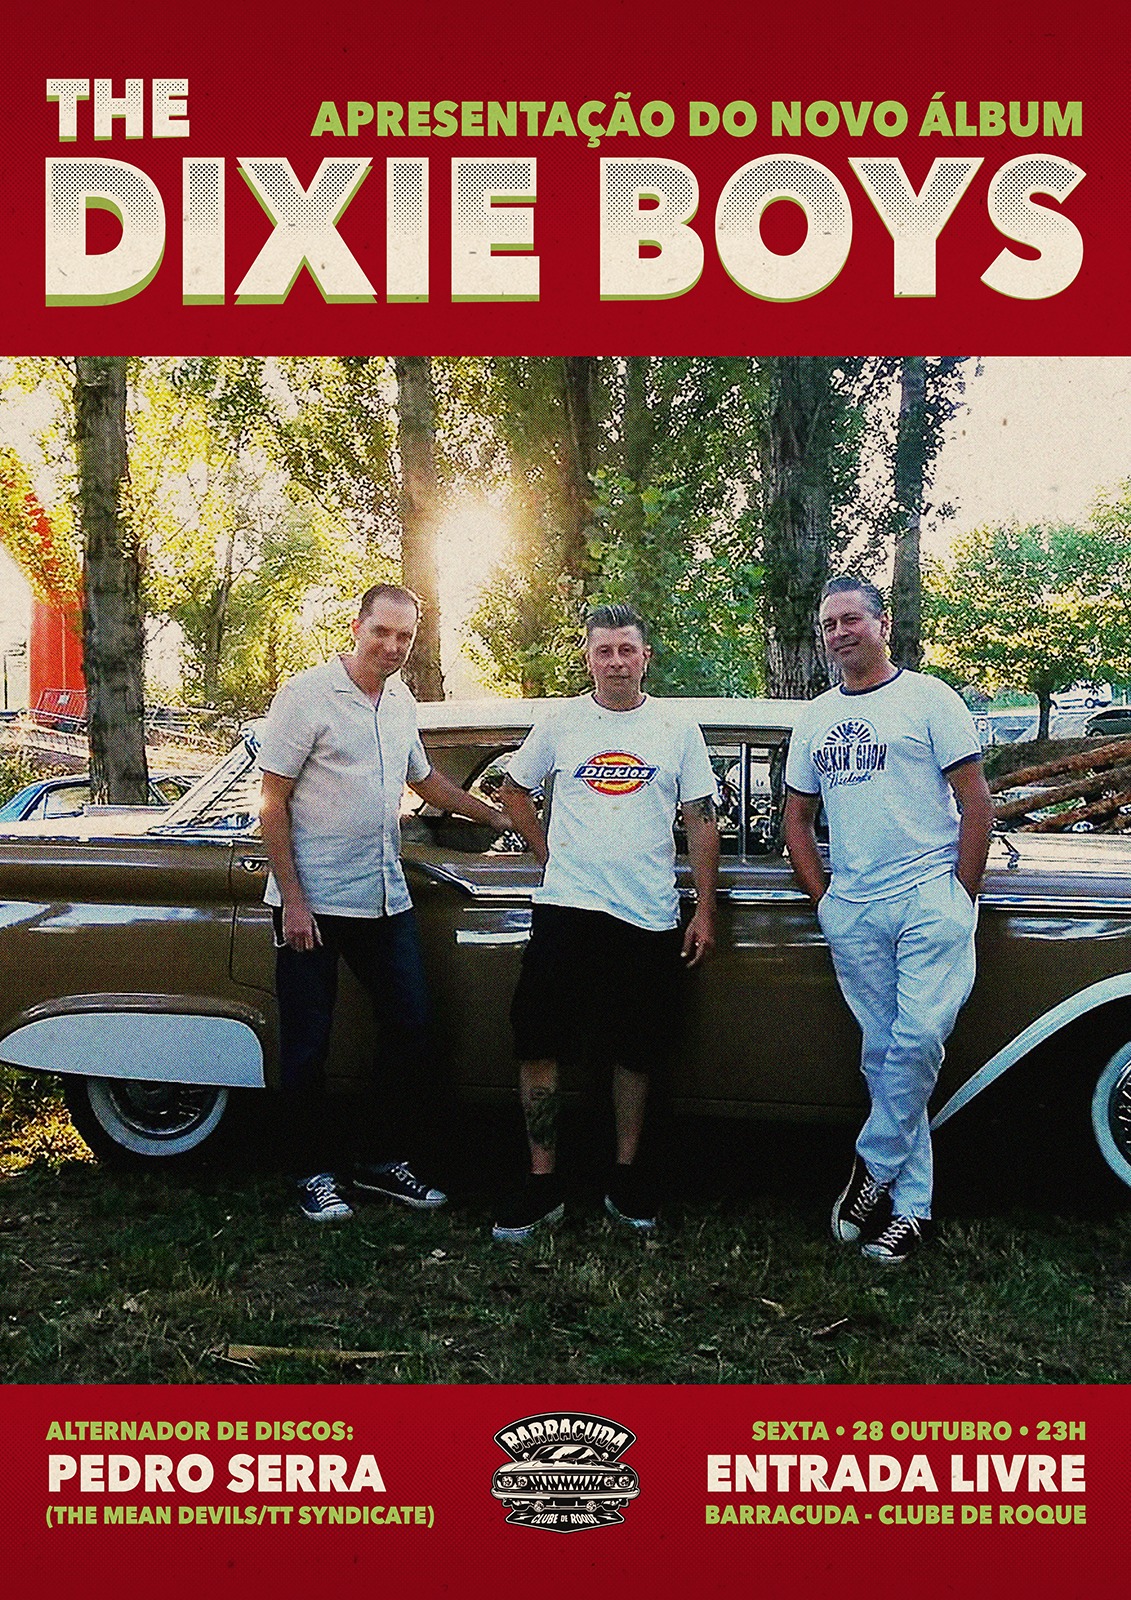 The Dixie Boys - Alternador de discos Pedro Serra - Entrada Livre